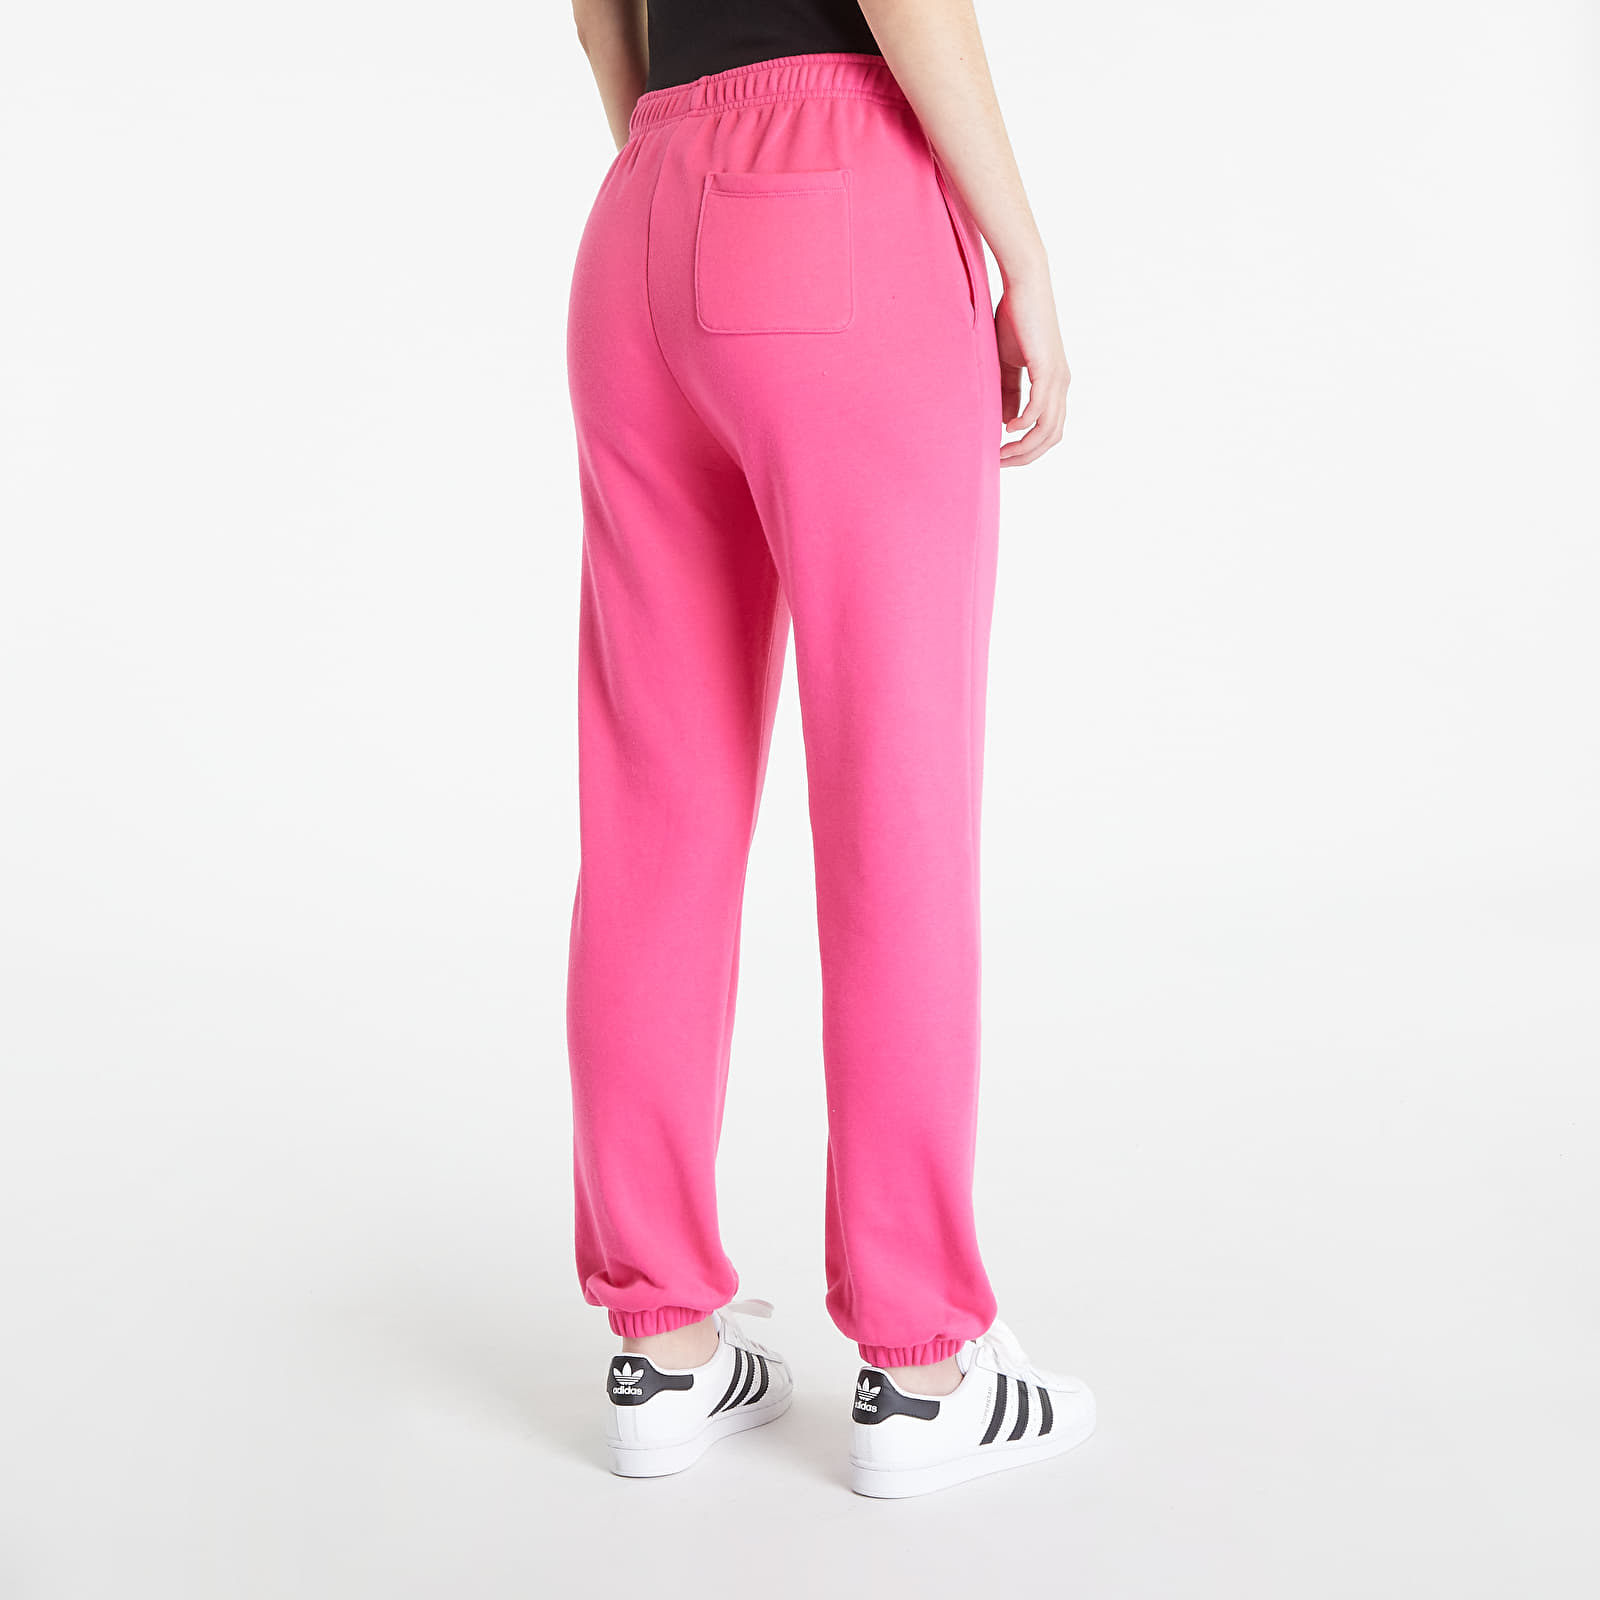 Queens Pants Champion Elastic Jogger | Pants Cuff Pink